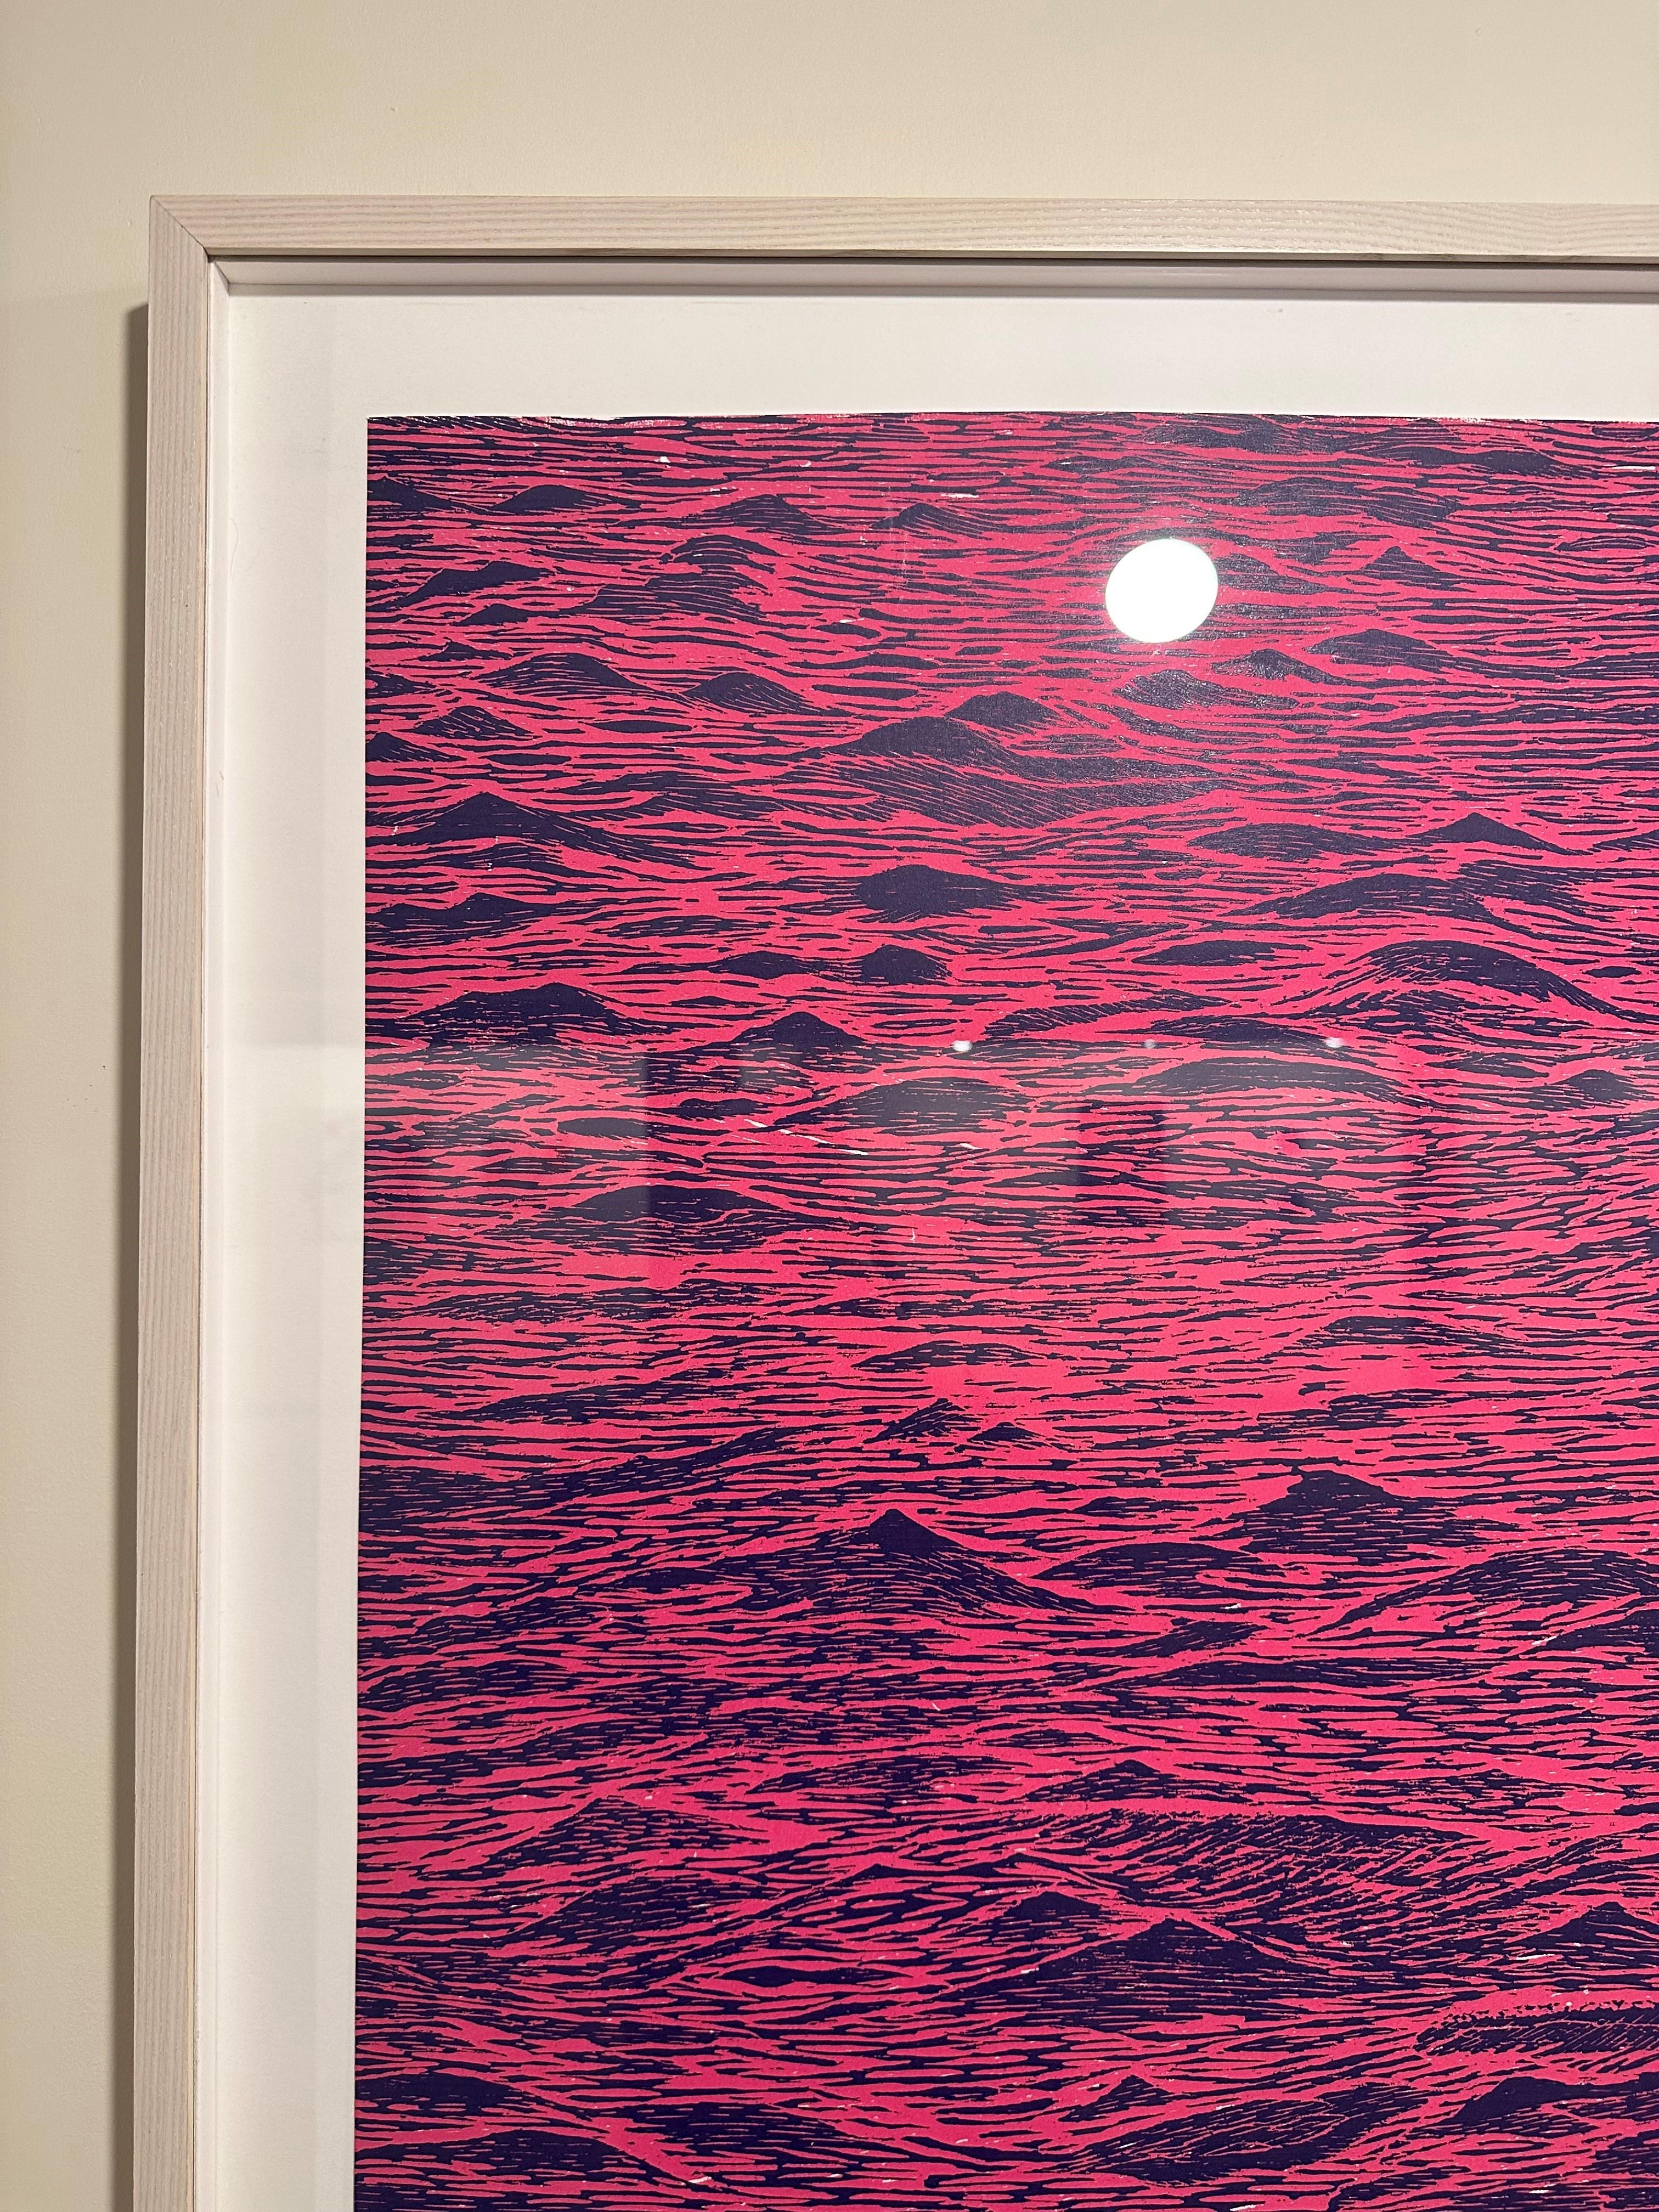 Impression sur bois Seascape Five, rose vif, bleu cobalt foncé, vagues océaniques - Contemporain Print par Eve Stockton